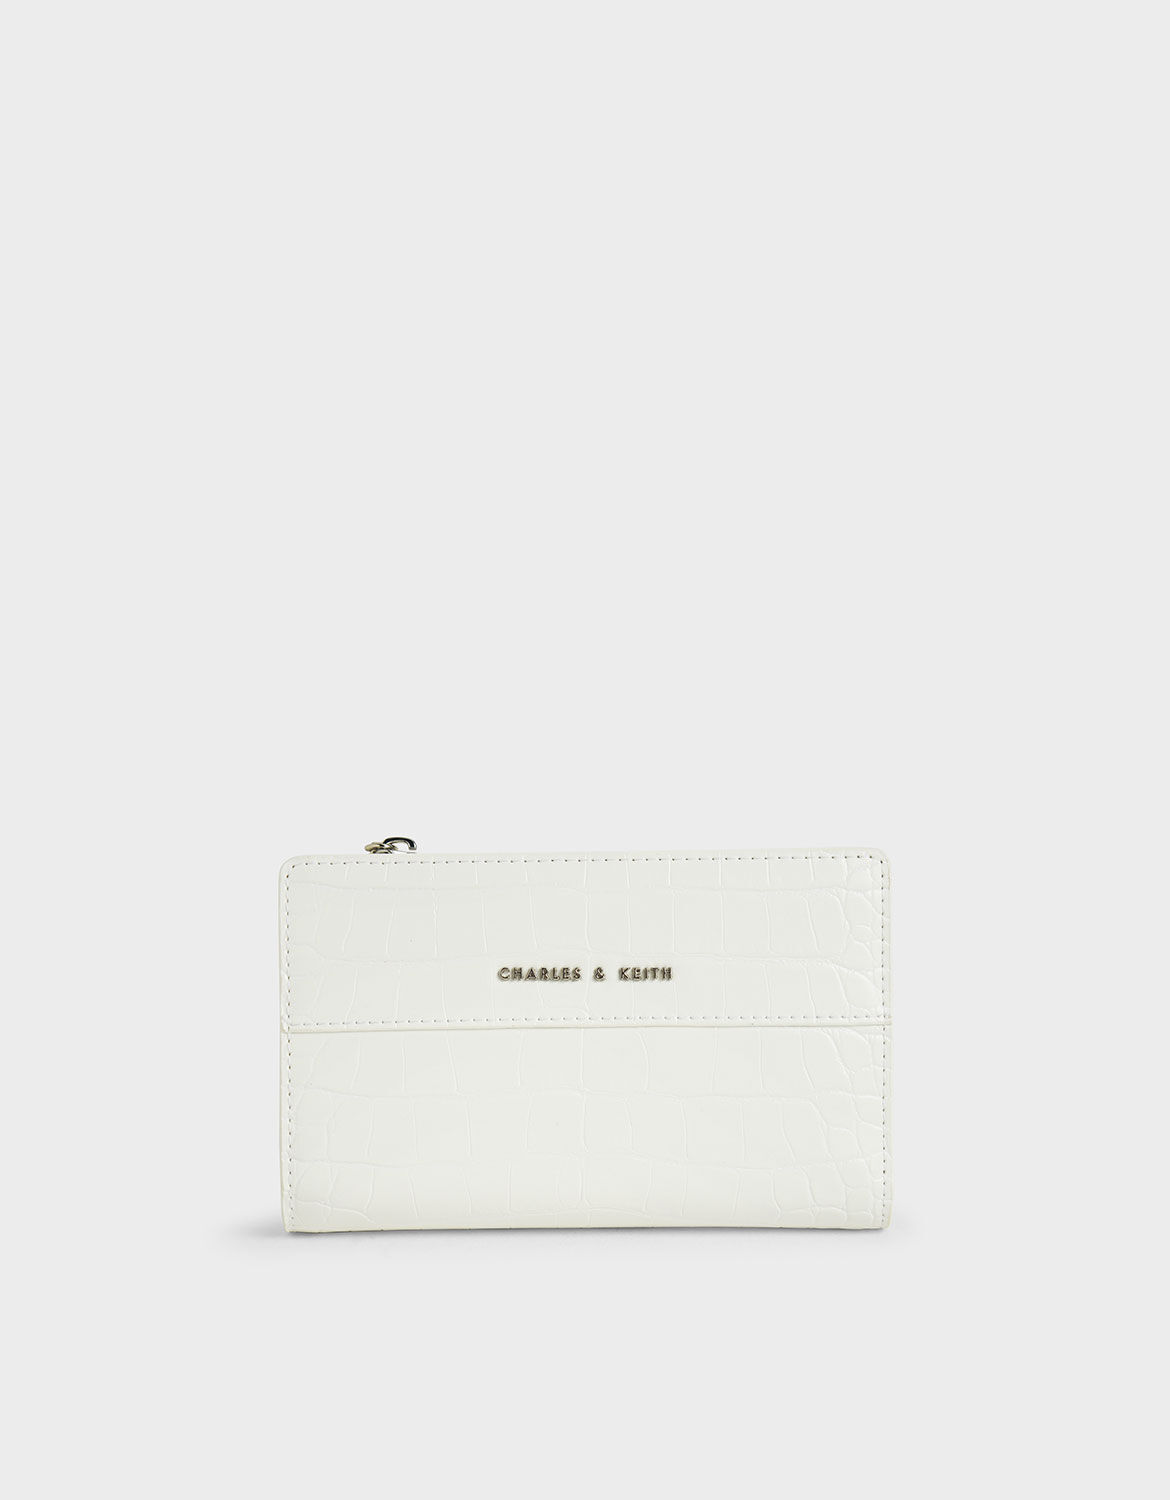 white wallet